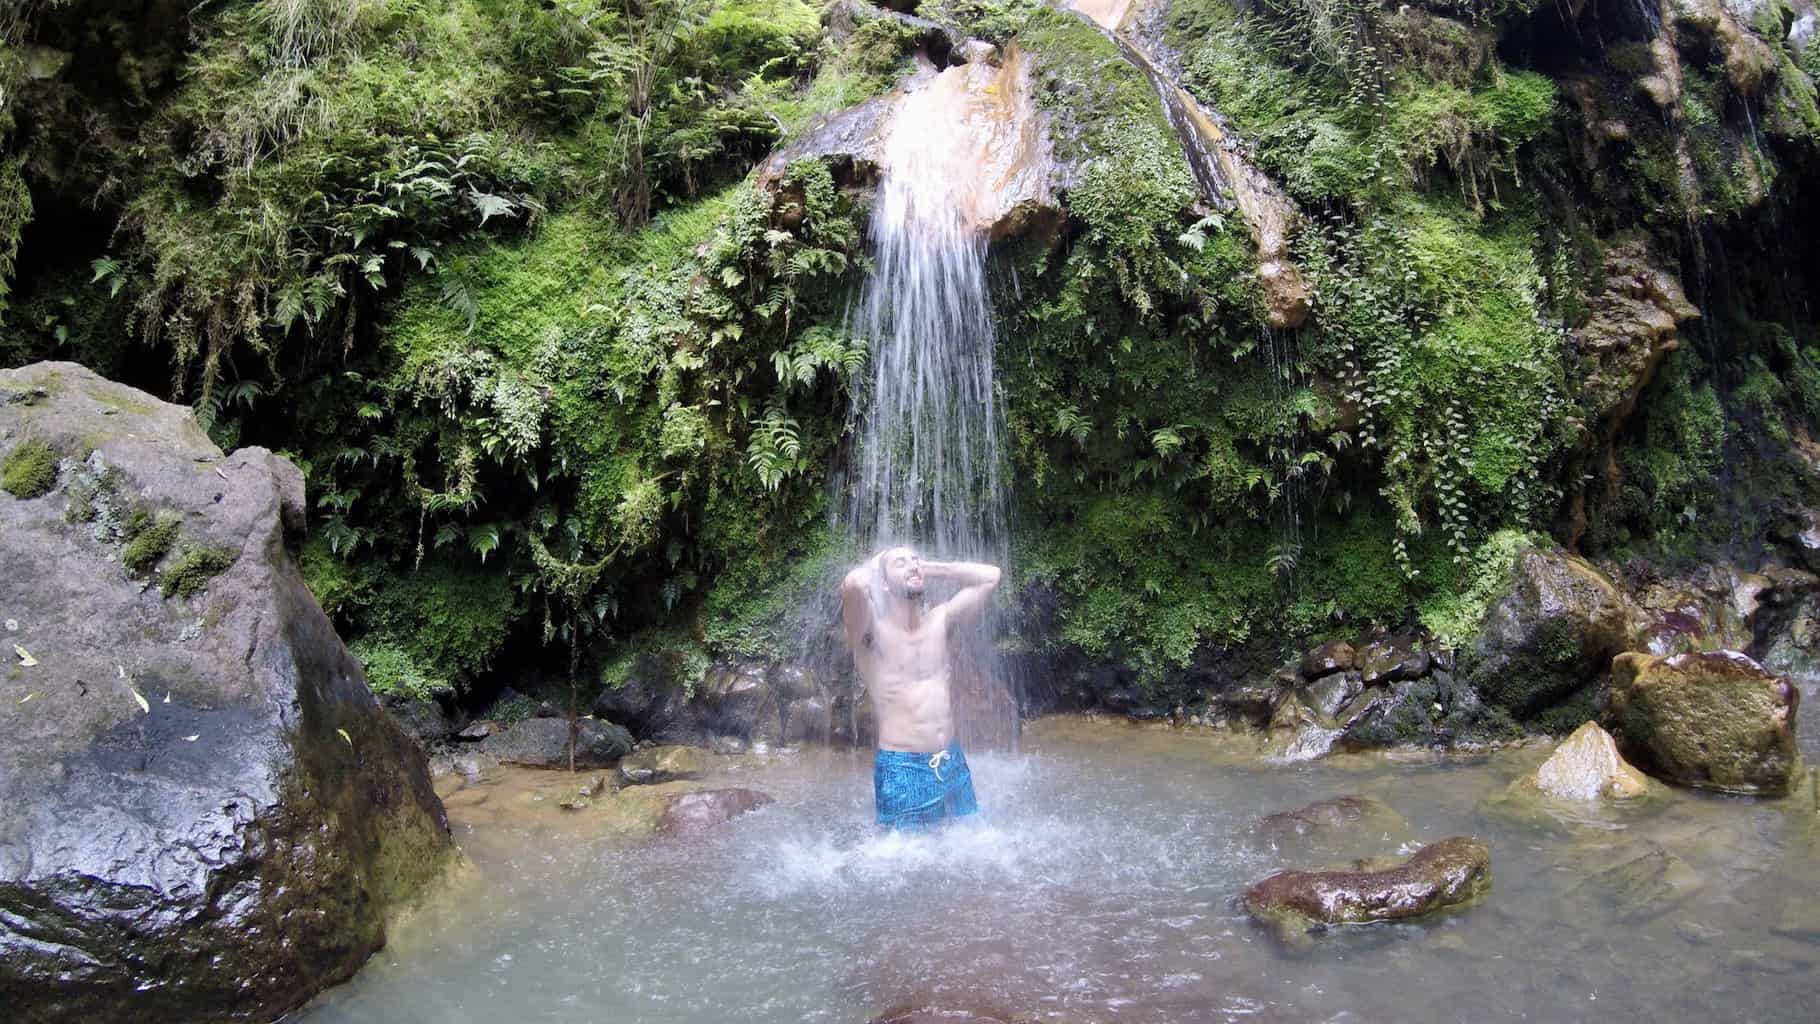 The Caldeira Velha Hot Springs of Sao Miguel, Azores